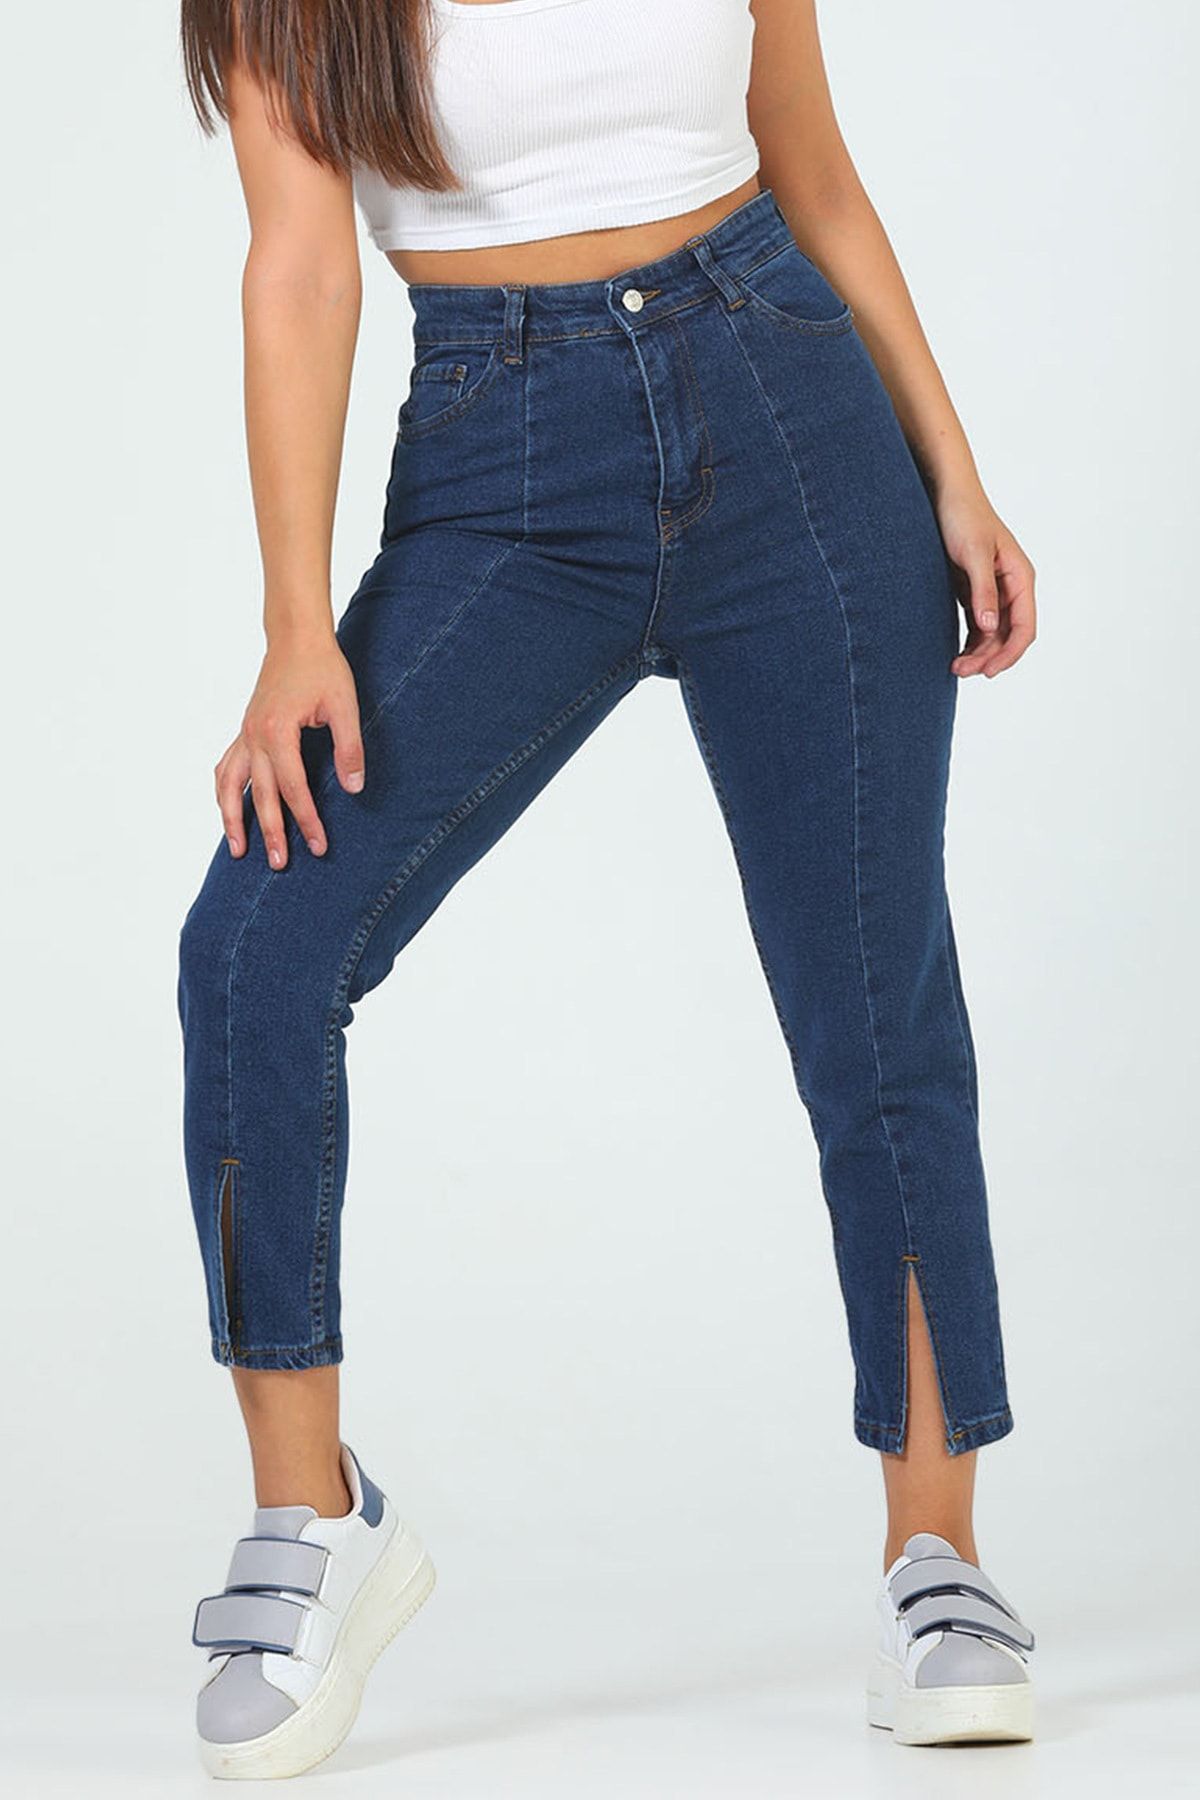 Julude Lacivert Kadın Yüksek Bel Ön Yırtmaç Detaylı Jeans Pantolon